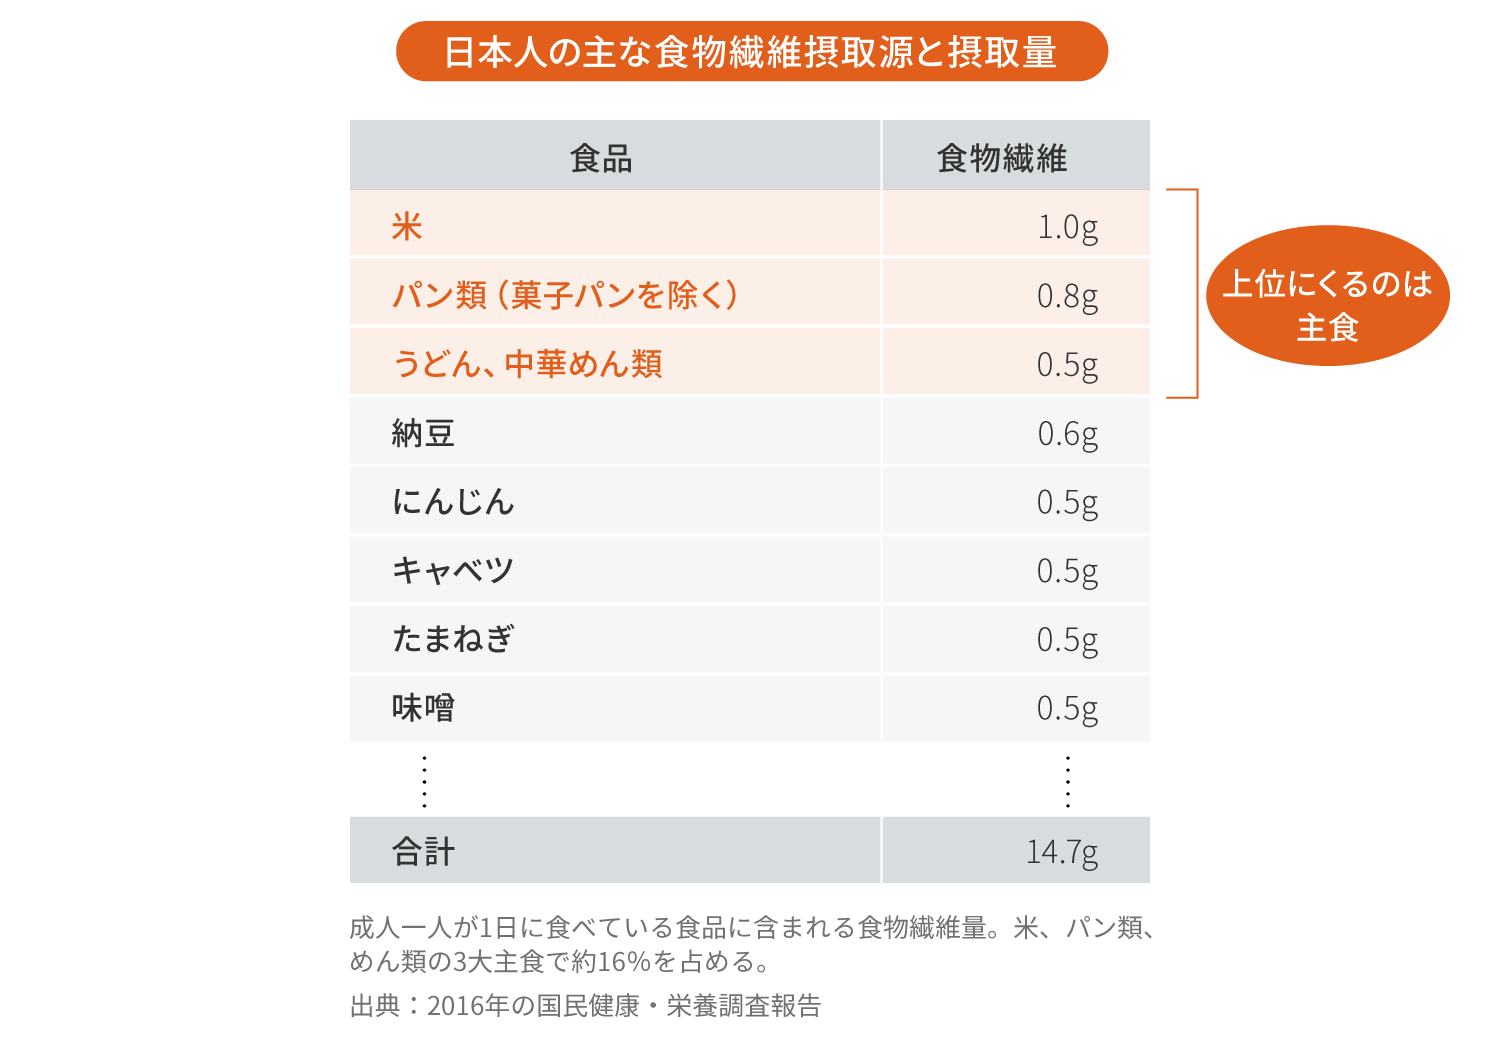 日本人の主な食物繊維摂取源と摂取量